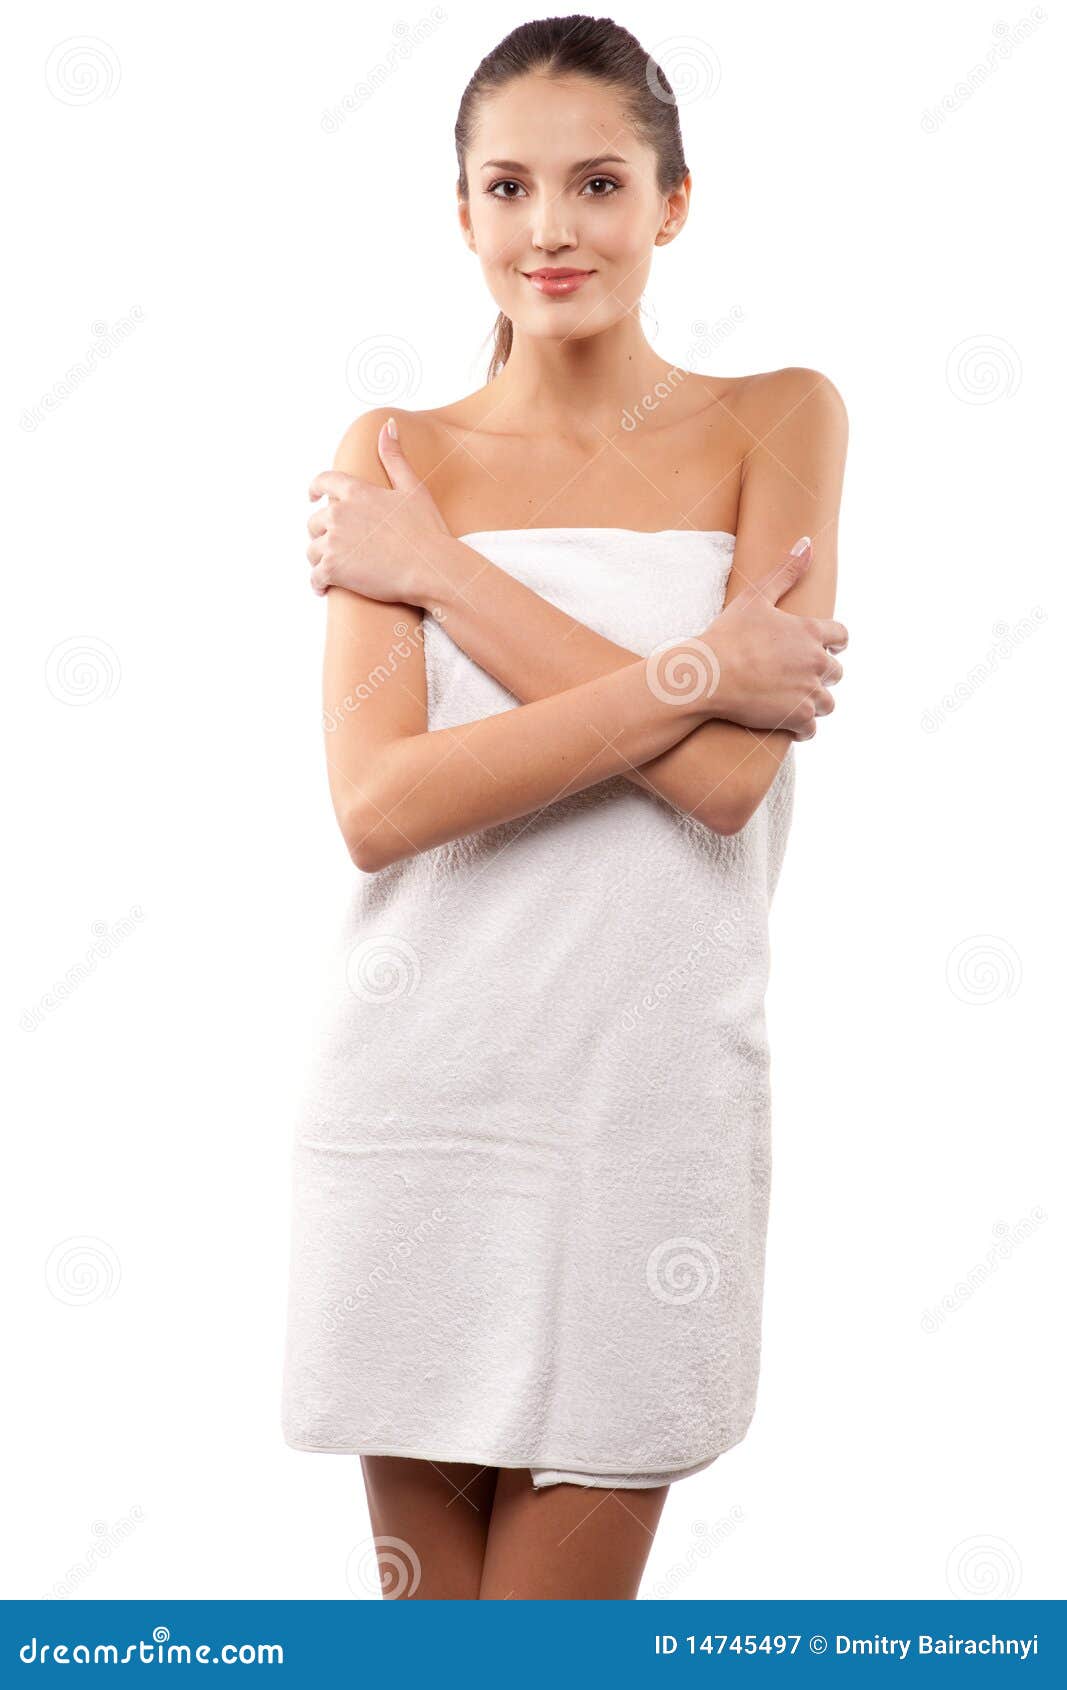 Ходит в полотенце. Девушка в полотенце. Девушка в белом полотенце. Стройная девушка в полотенце. Красавица в полотенце.